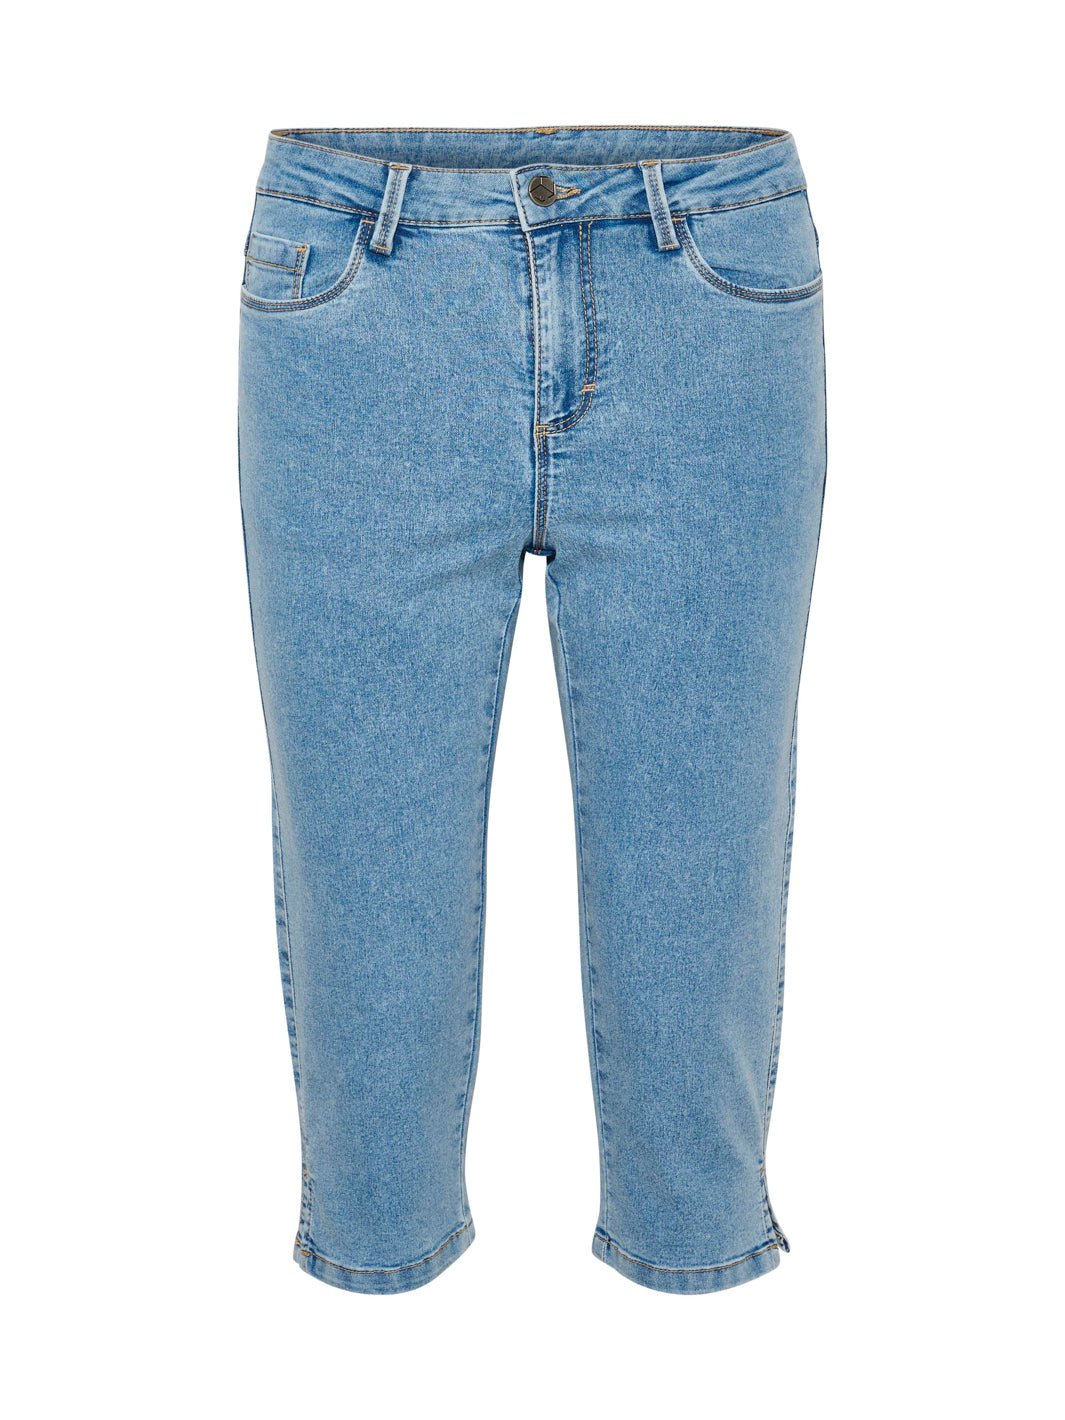 Kaffe KAvicky capri jeans light blue washed - Online-Mode